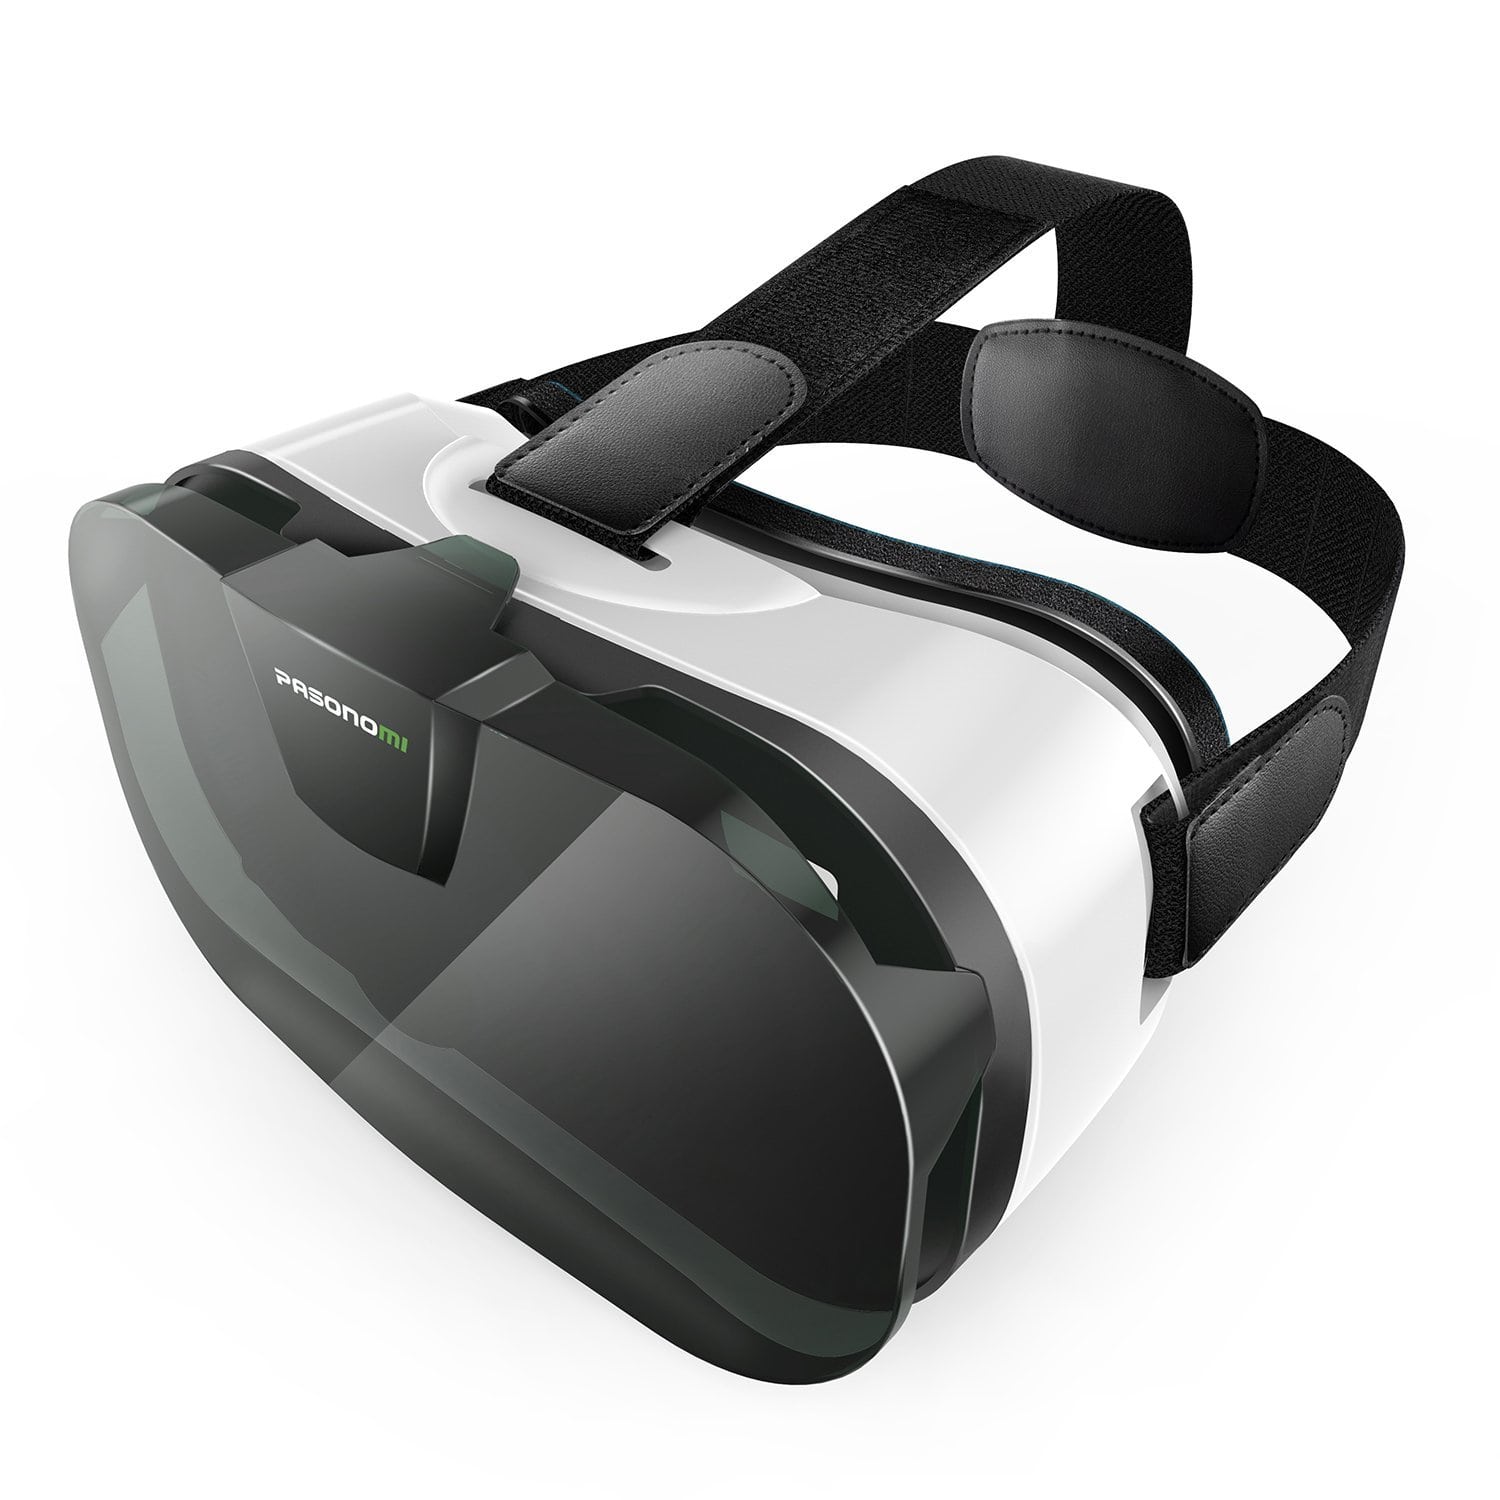 Виртуальные очки 2. VR очки Oculus 3. 3d очки VR стрип. ВР очки ДНС. Очки виртуальной реальности для смартфона Durovis Dive 5.